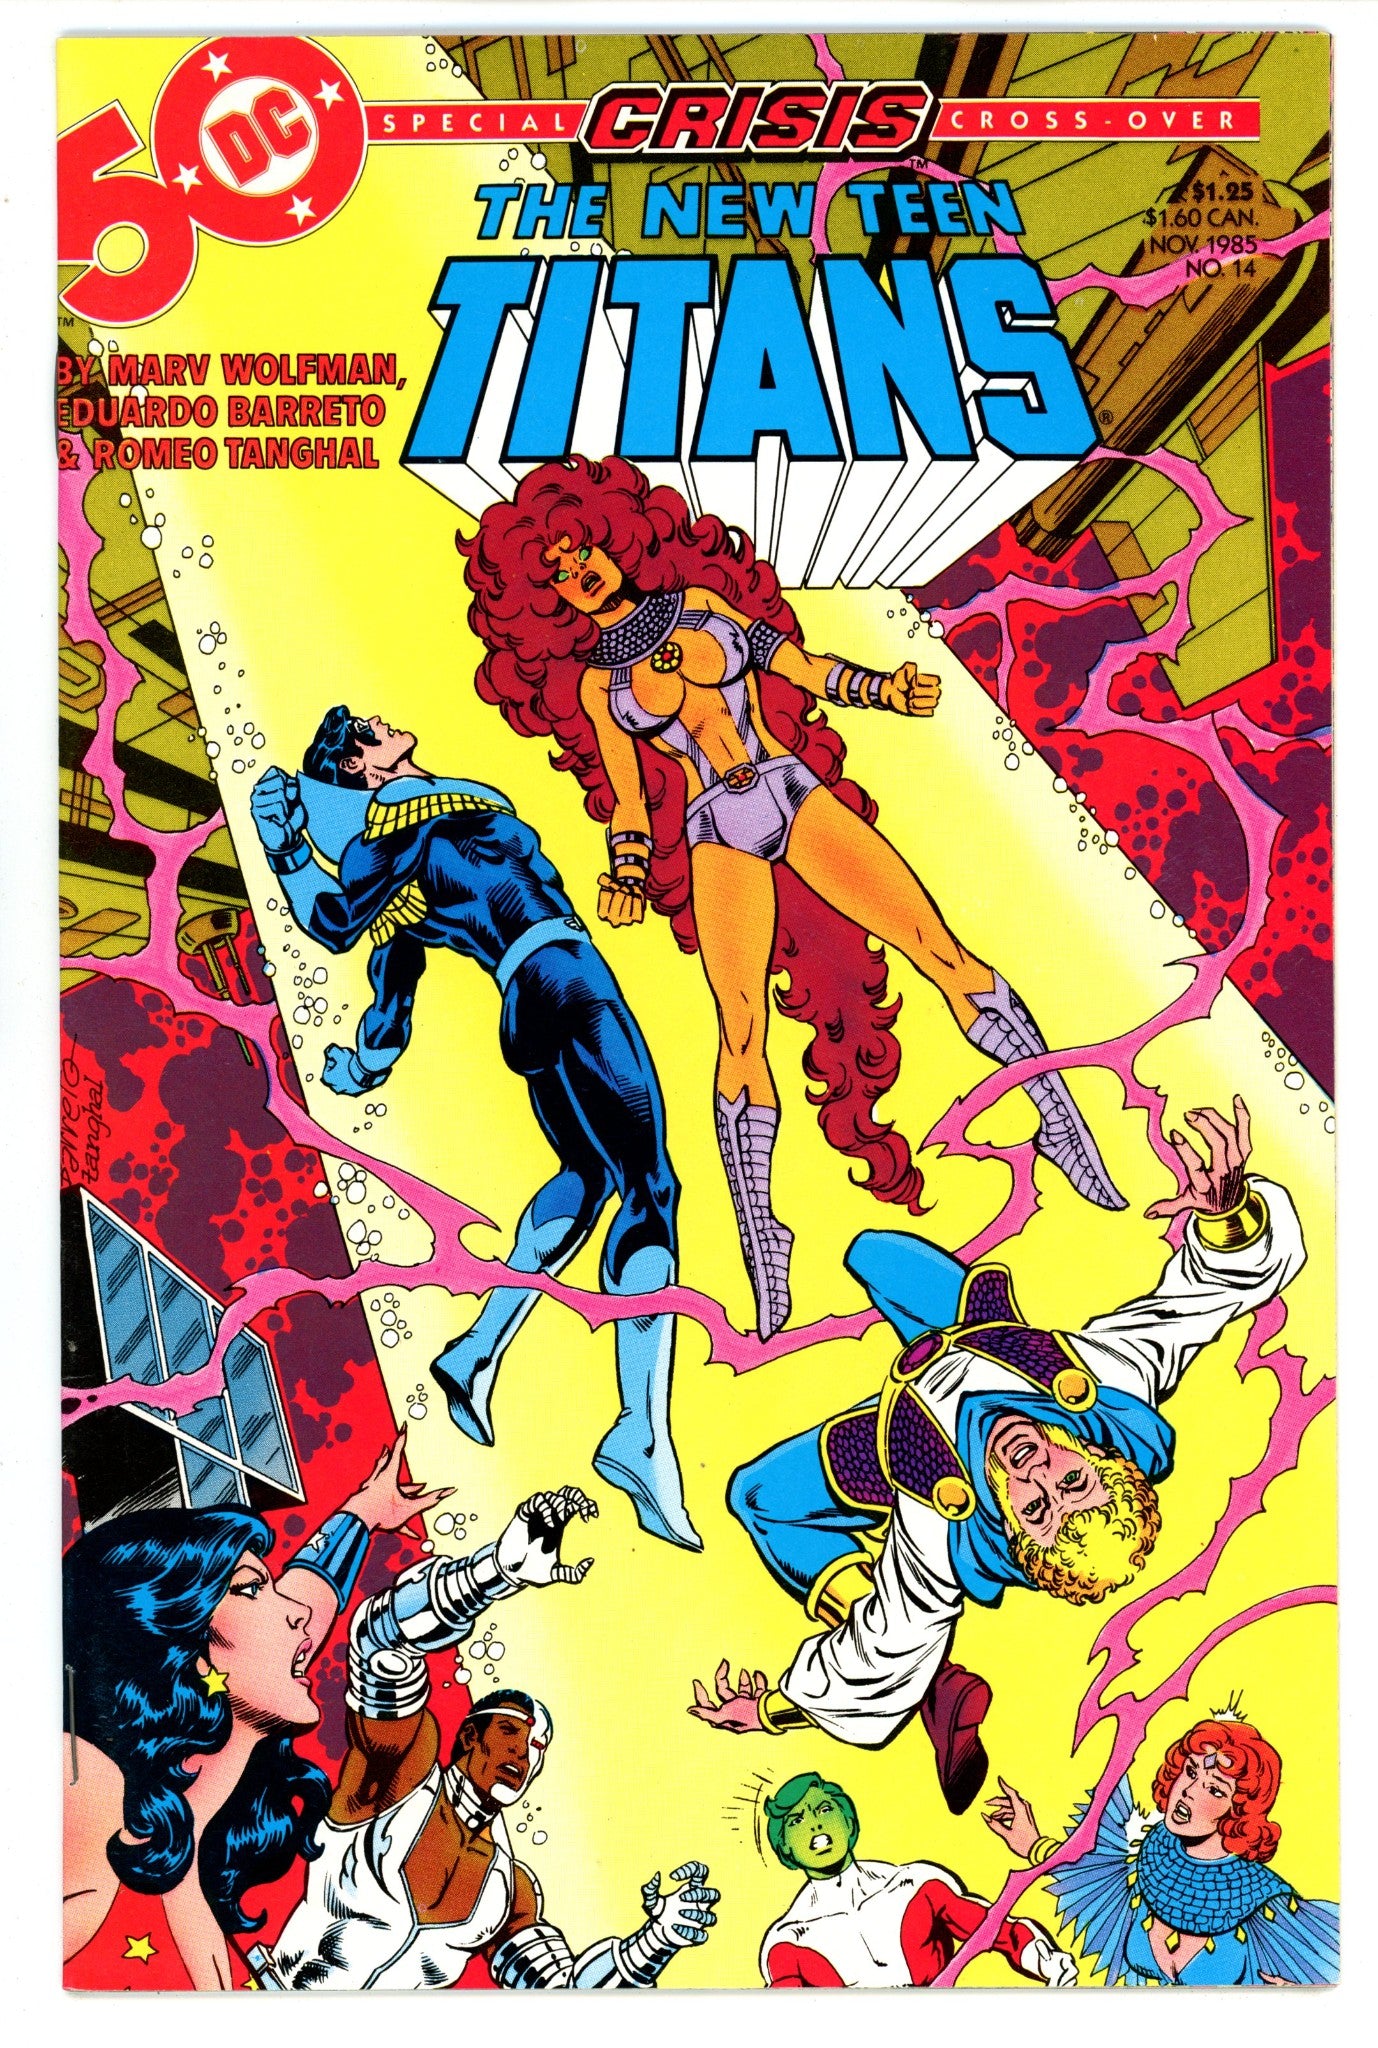 The New Teen Titans Vol 2 14 High Grade (1985) 